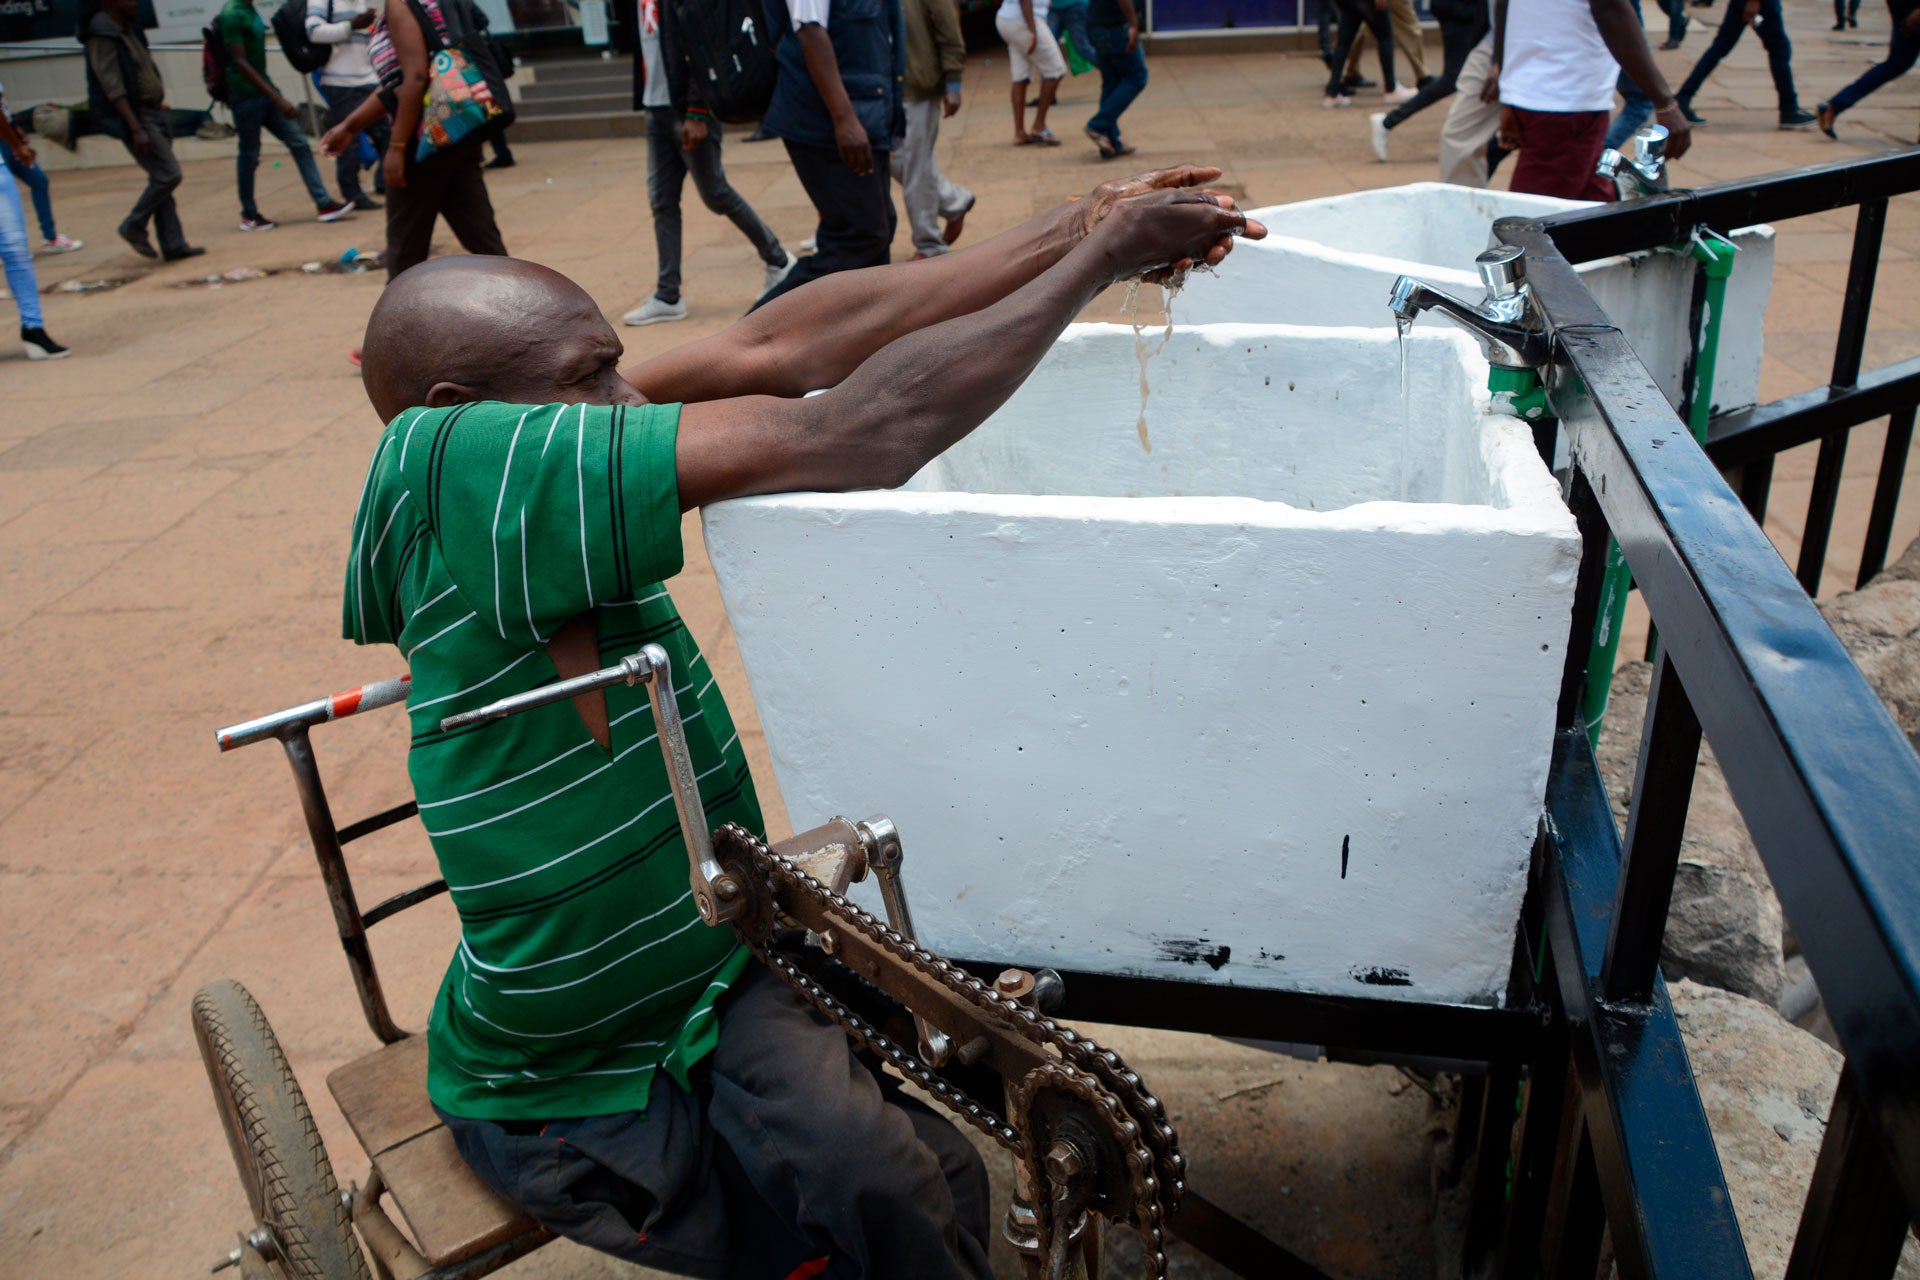 ​رجل في كرسي متحرك يغسل يديه في مغسلة عامة في نيروبي، كينيا، 22 مارس/آذار 2020، اتباعا للتعليمات الصحية من السلطات في إطار مكافحة انتشار فيروس "كورونا". إلا أن هذه الممارسة الأساسية صعبة أكثر عليه بسبب إعاقته. 